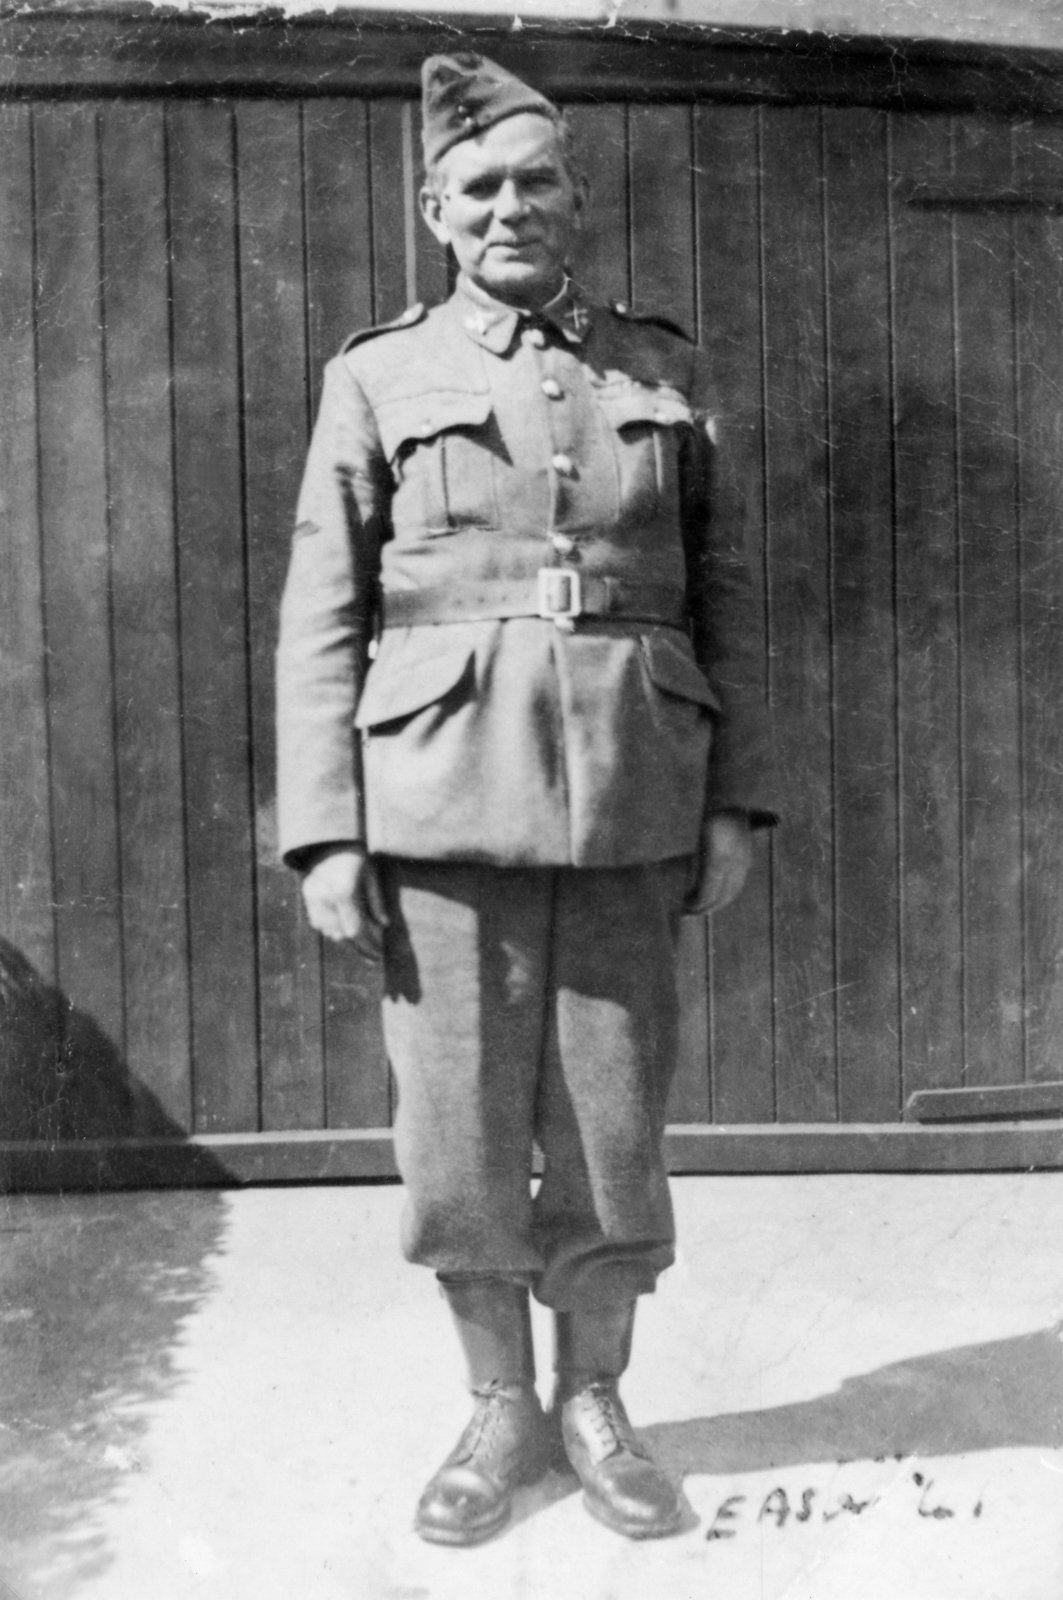 Cornelius (Con) O'Donovan in Old I.R.A. uniform, 1941 (25th anniversary of Rising)